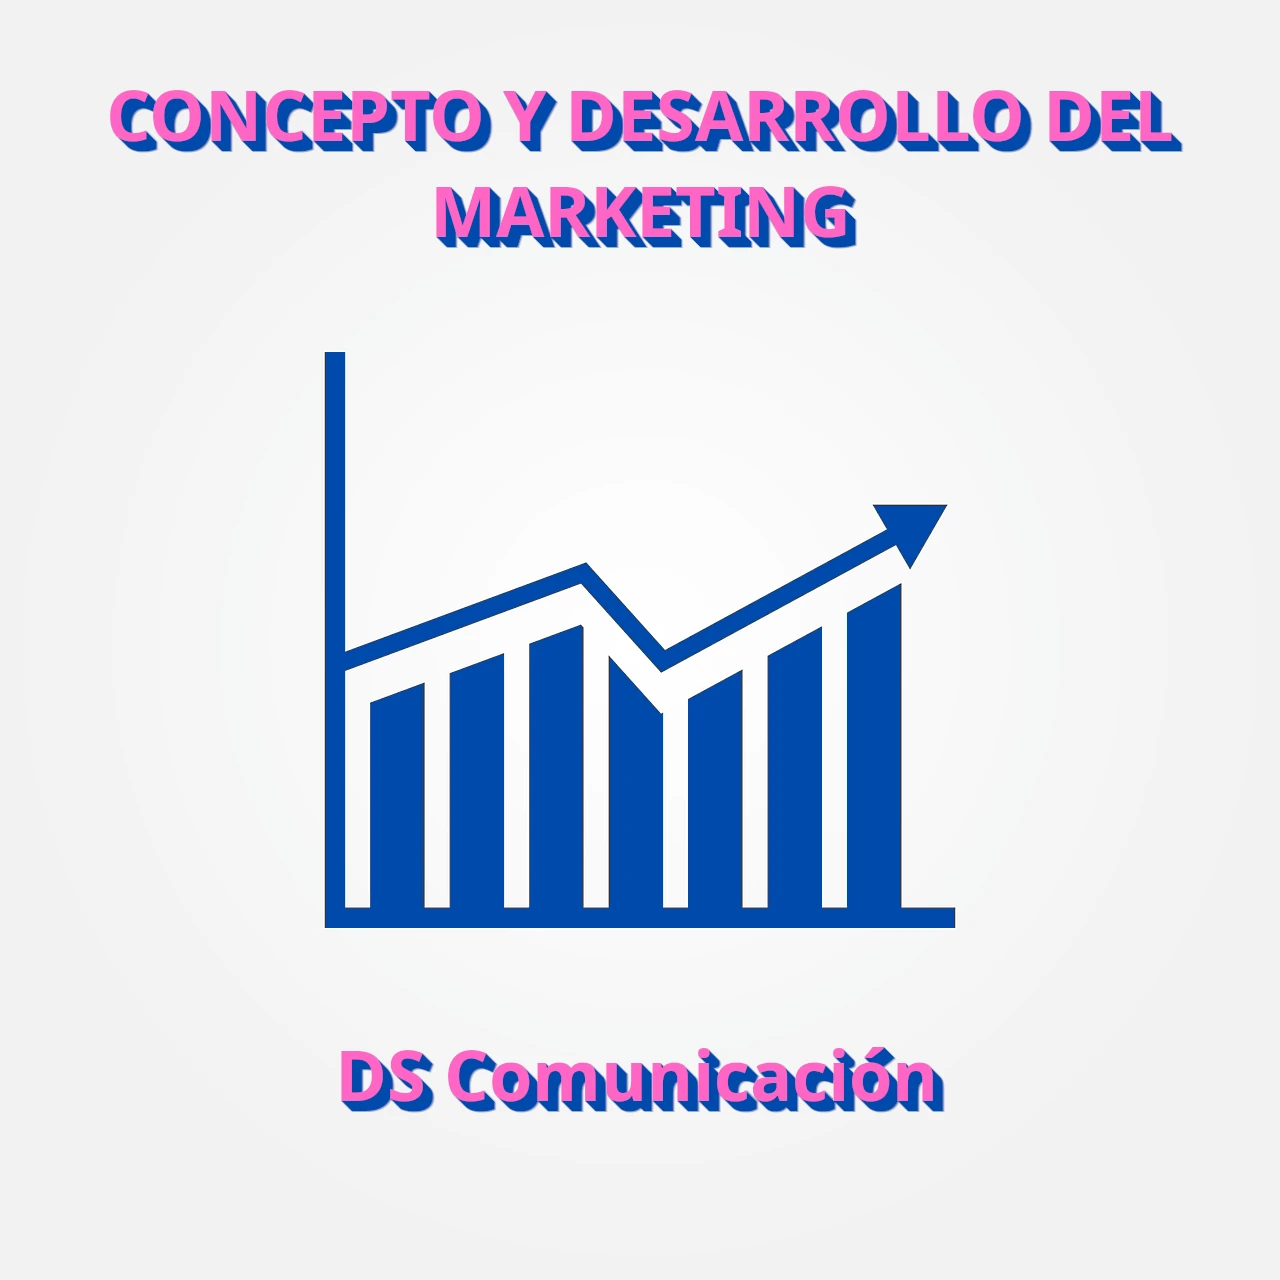 CONCEPTO Y DESARROLLO DEL MARKETING